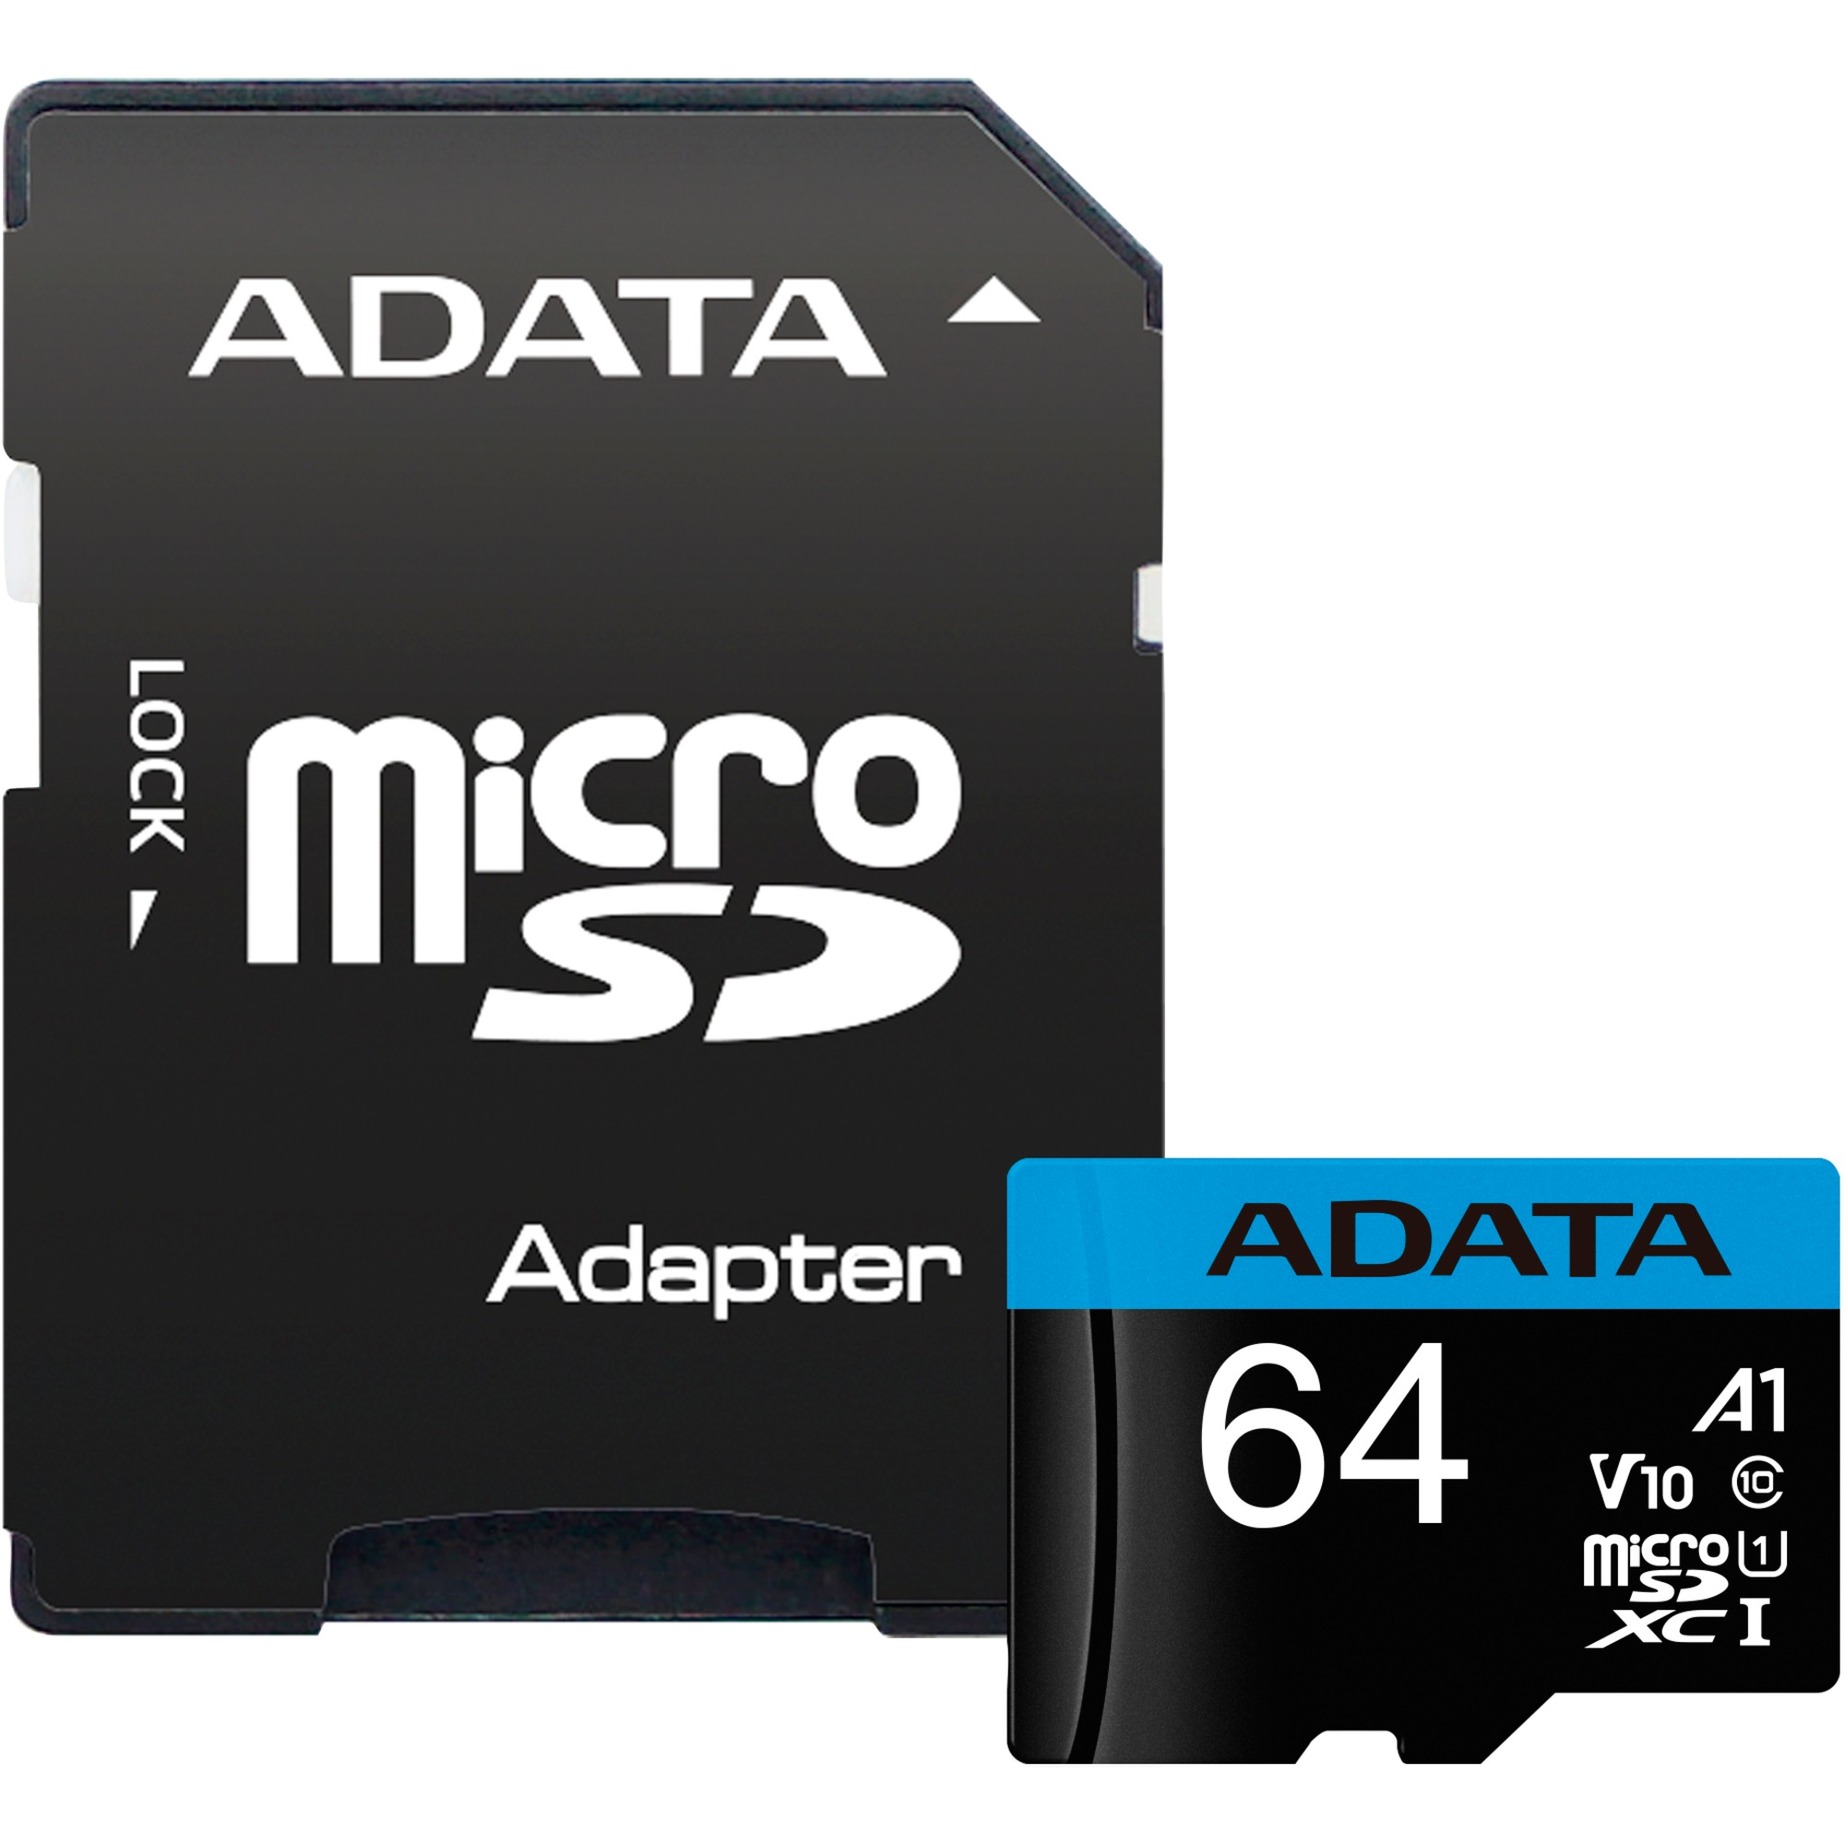 Image of Alternate - Premier 64 GB microSDXC, Speicherkarte online einkaufen bei Alternate